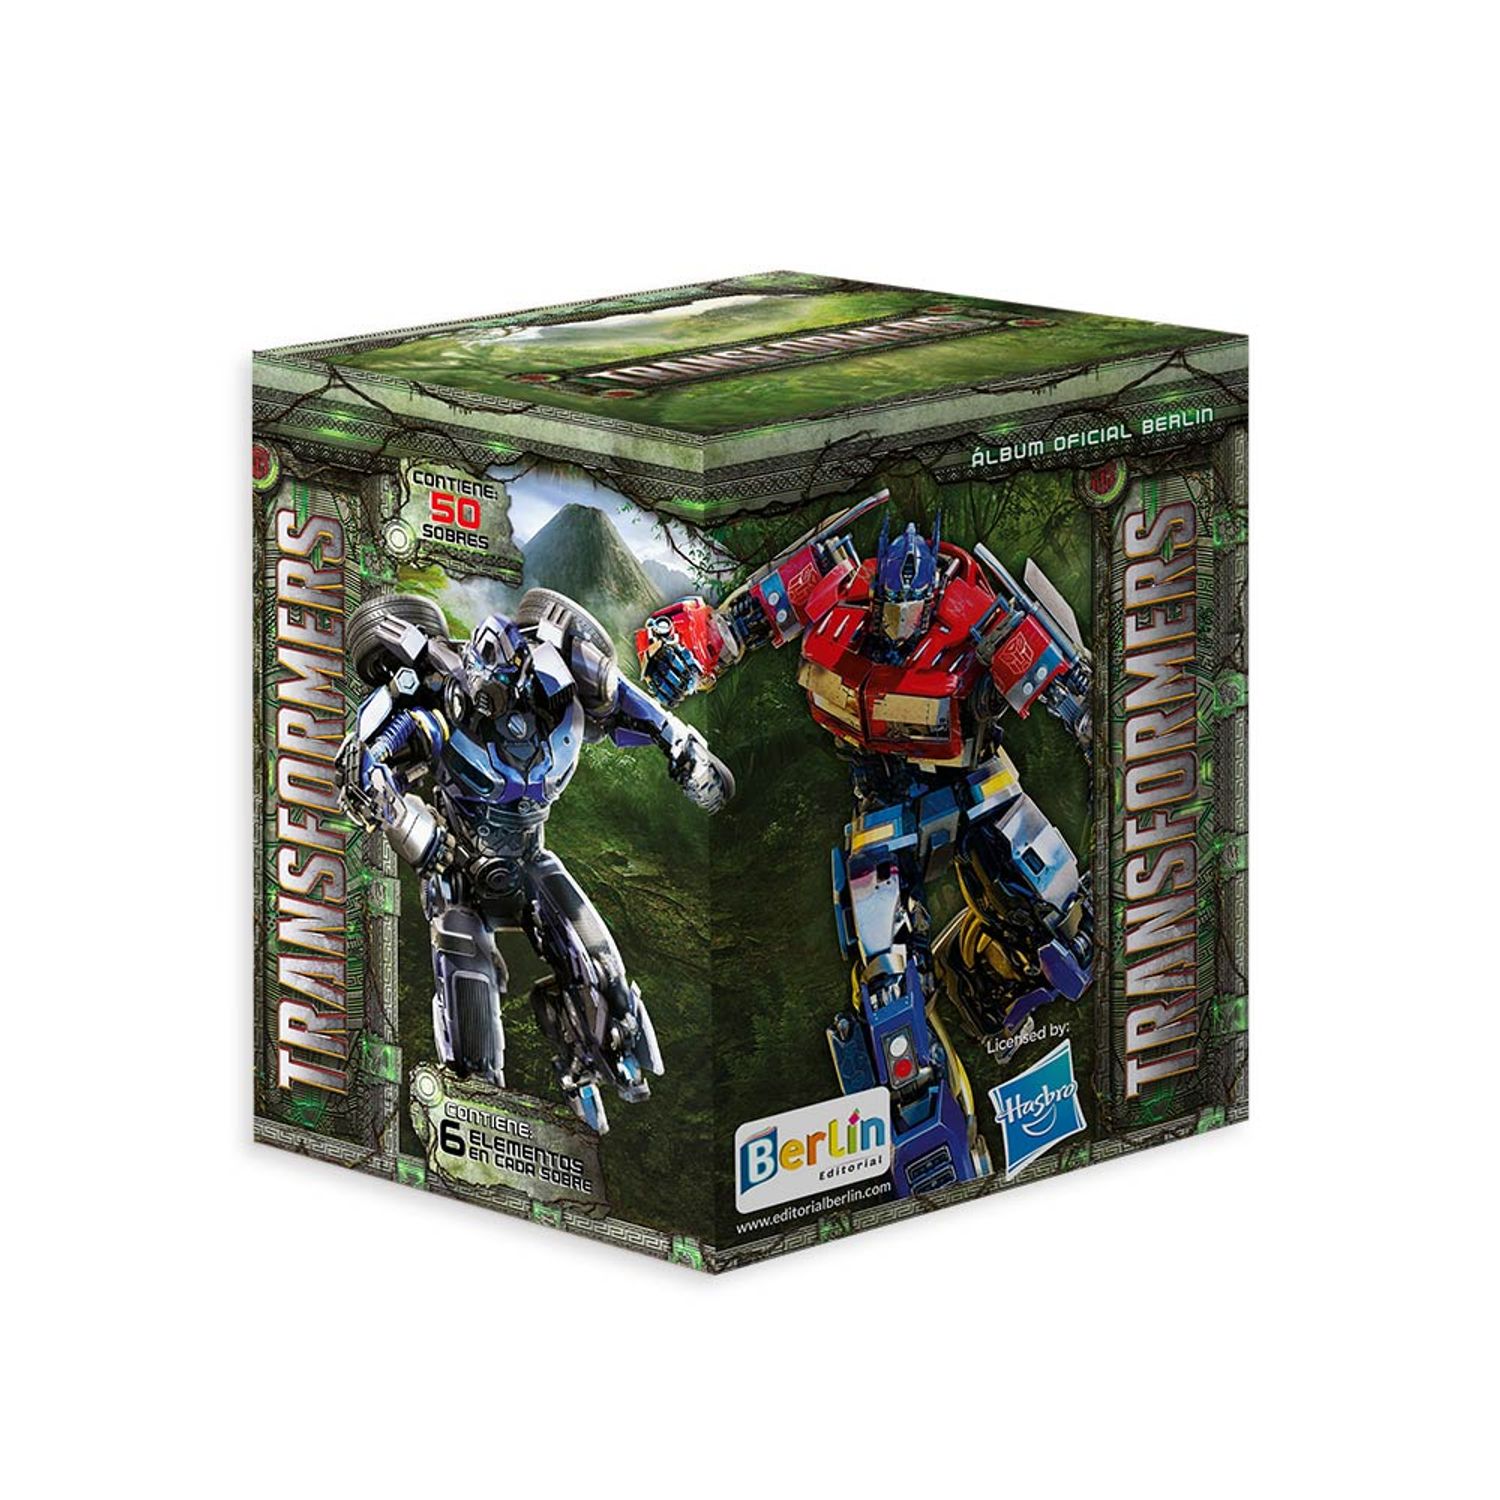 Transformers Prime, Temp. 1 Vol. 5 – Detalles de la edición